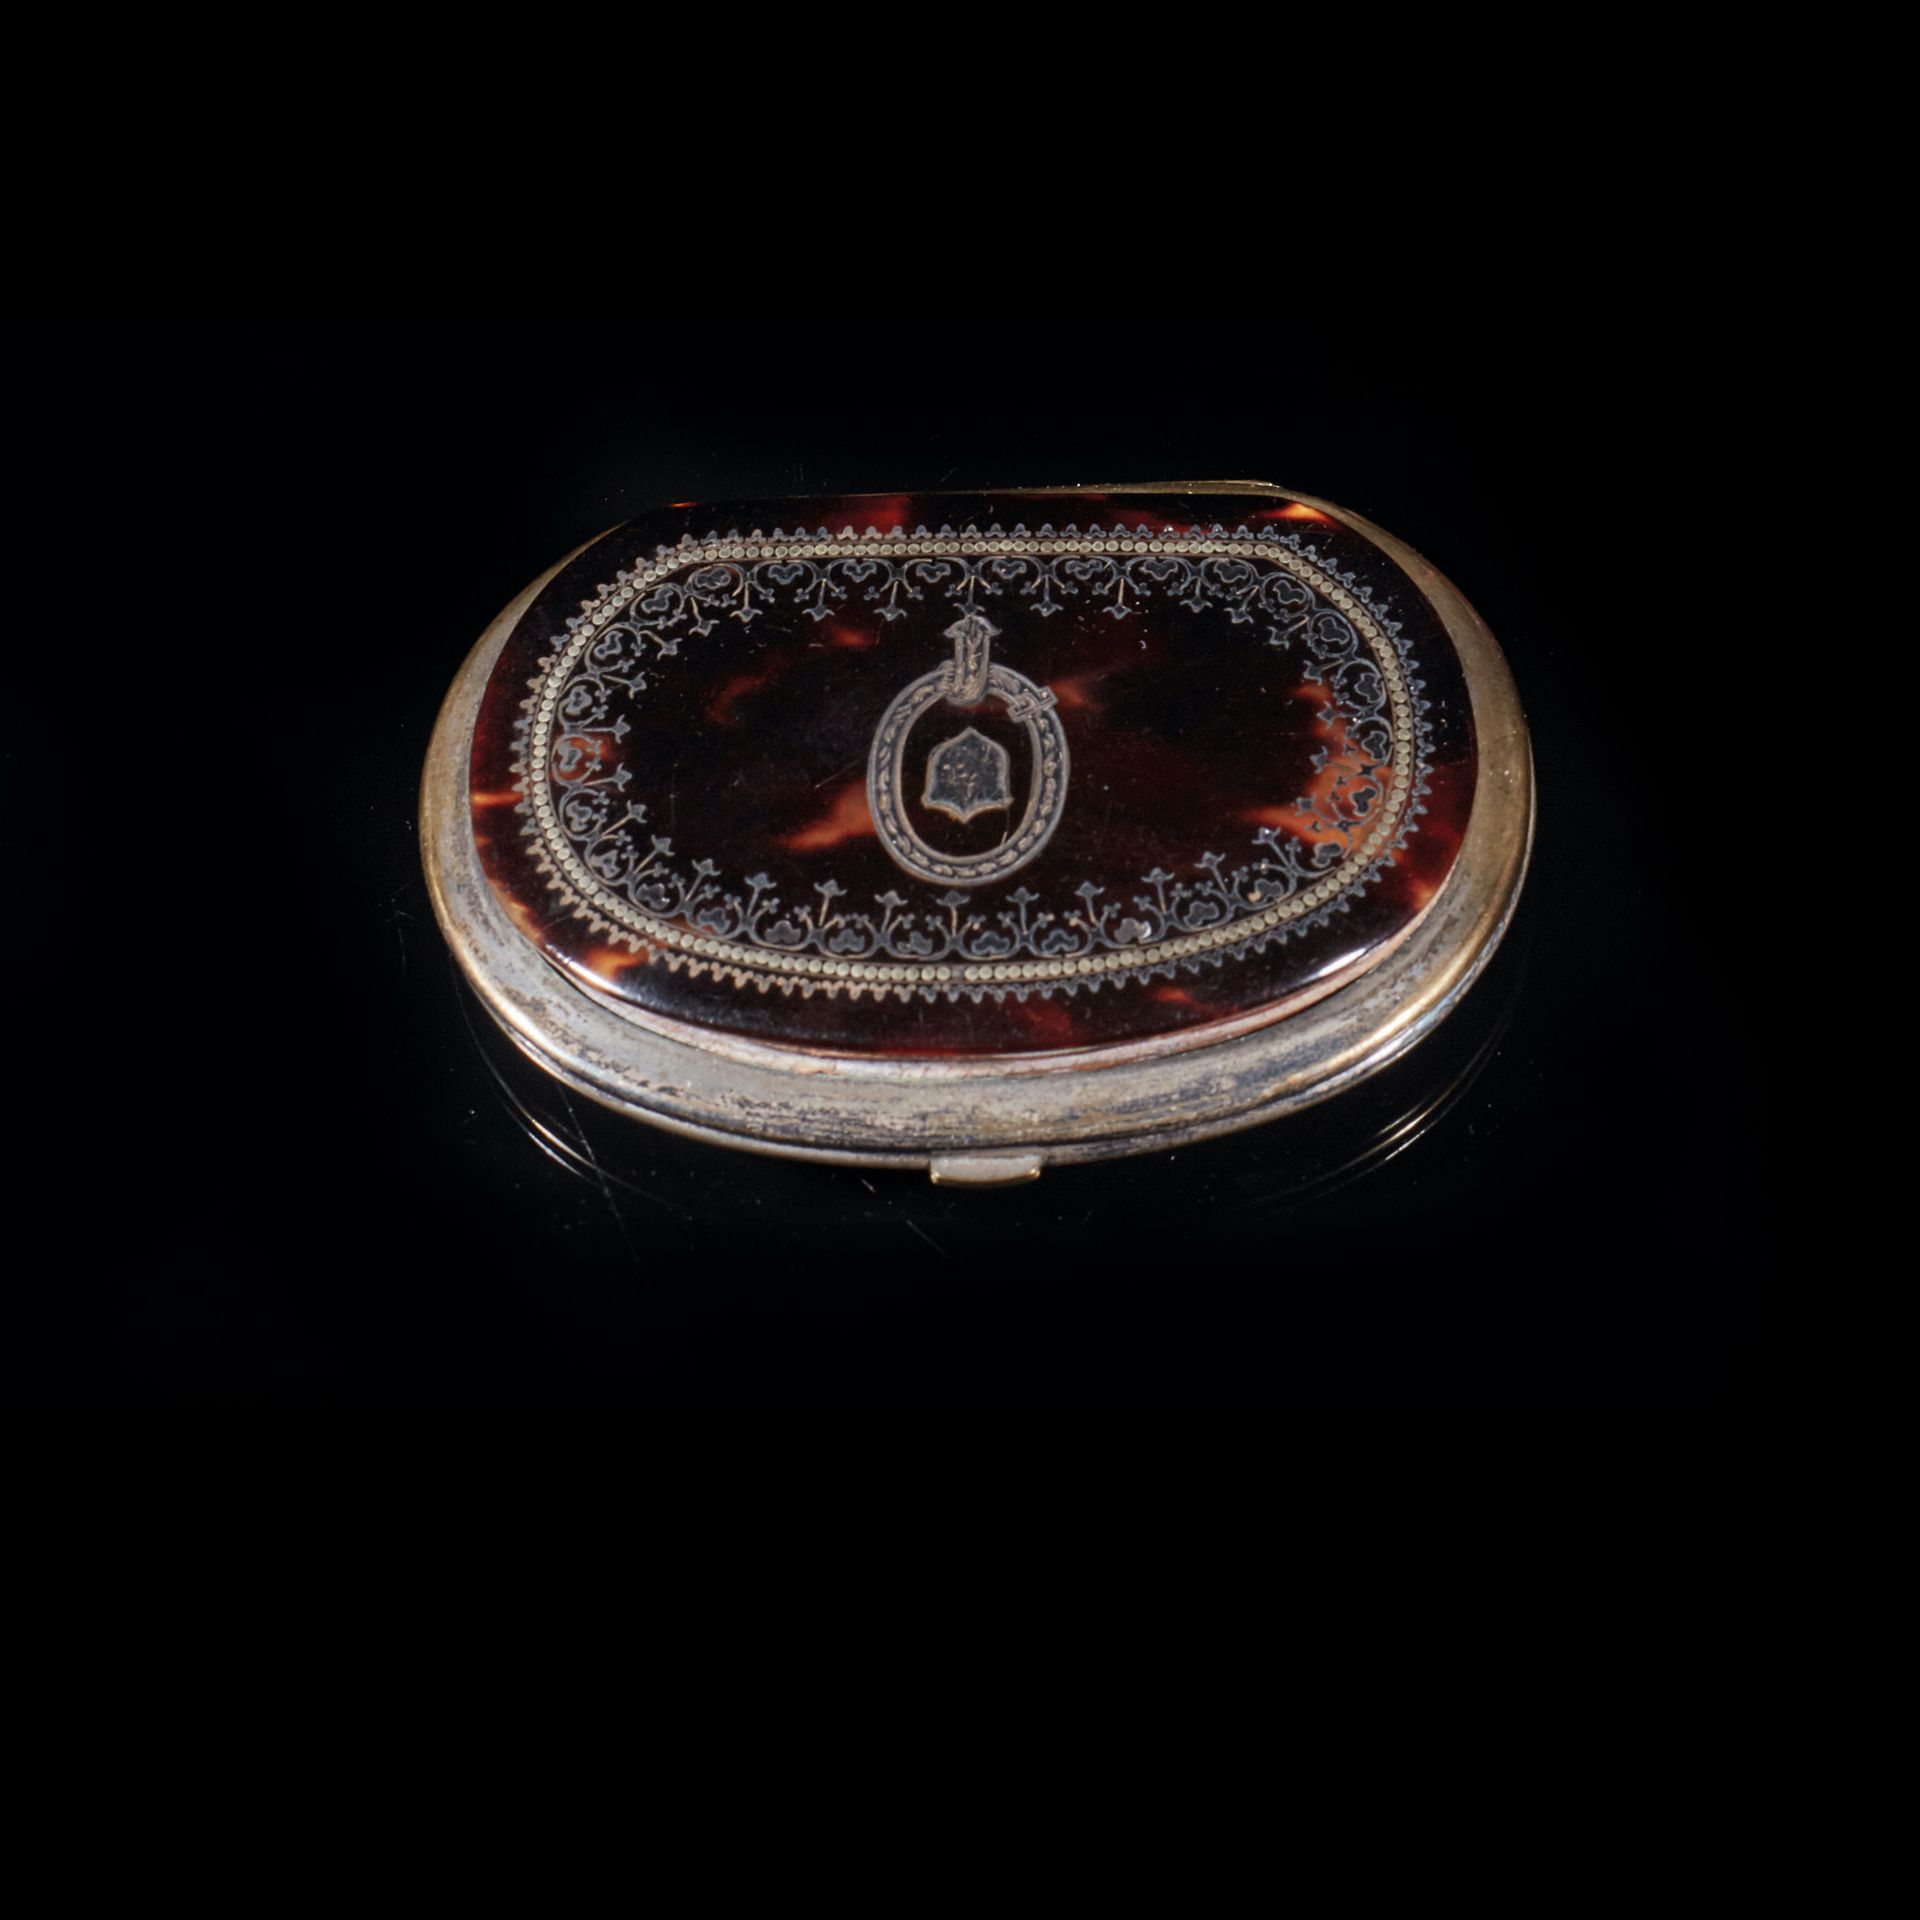 Null 一个镶银环、有凹痕的玳瑁肾形钱包，饰有百叶窗和盾牌。
长 8 厘米。
拿破仑三世时期。